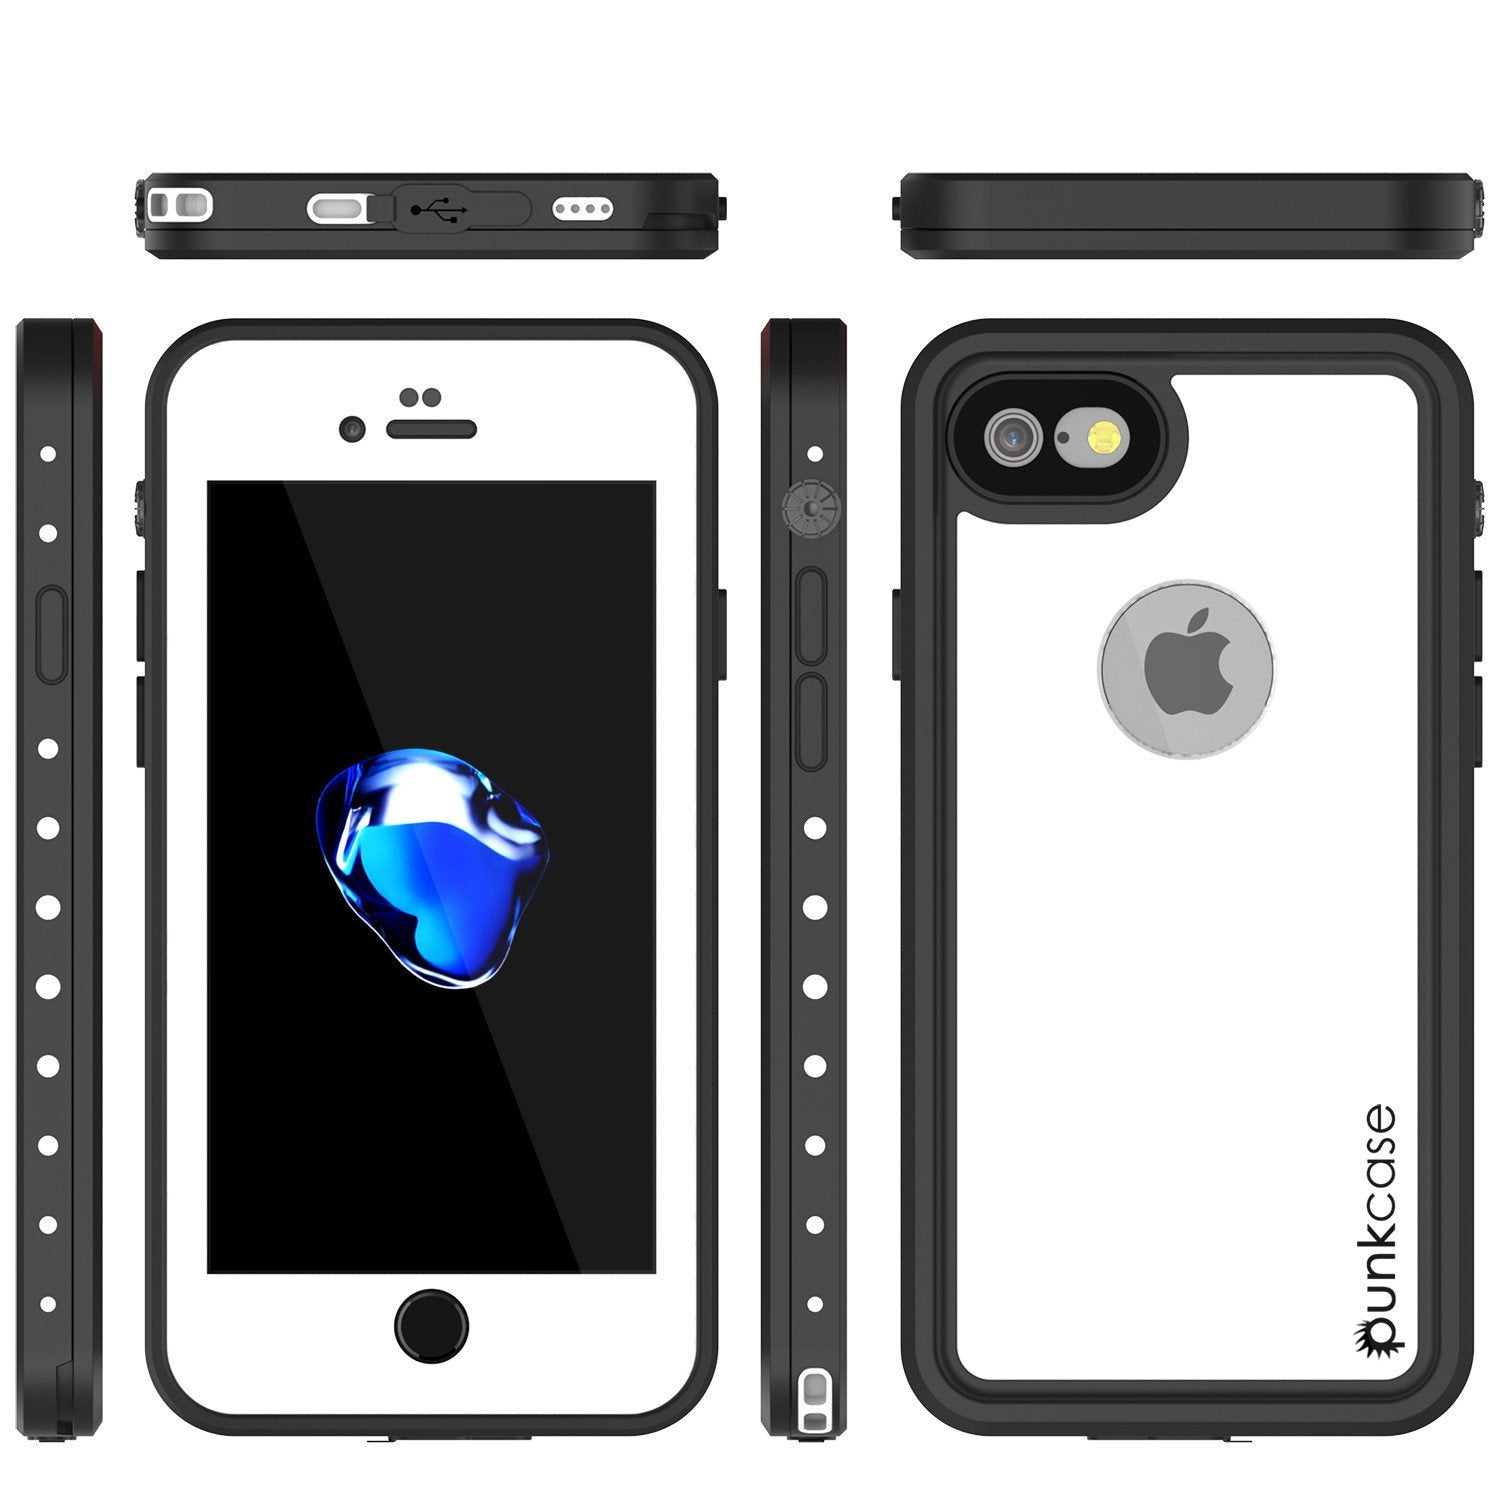 iPhone 7 Waterproof Case, Punkcase [White] [StudStar Series] [Slim Fit] [IP68 Certified] [Shockproof] [Dirtproof] [Snowproof] Armor Cover for Apple iPhone 7 & 7s